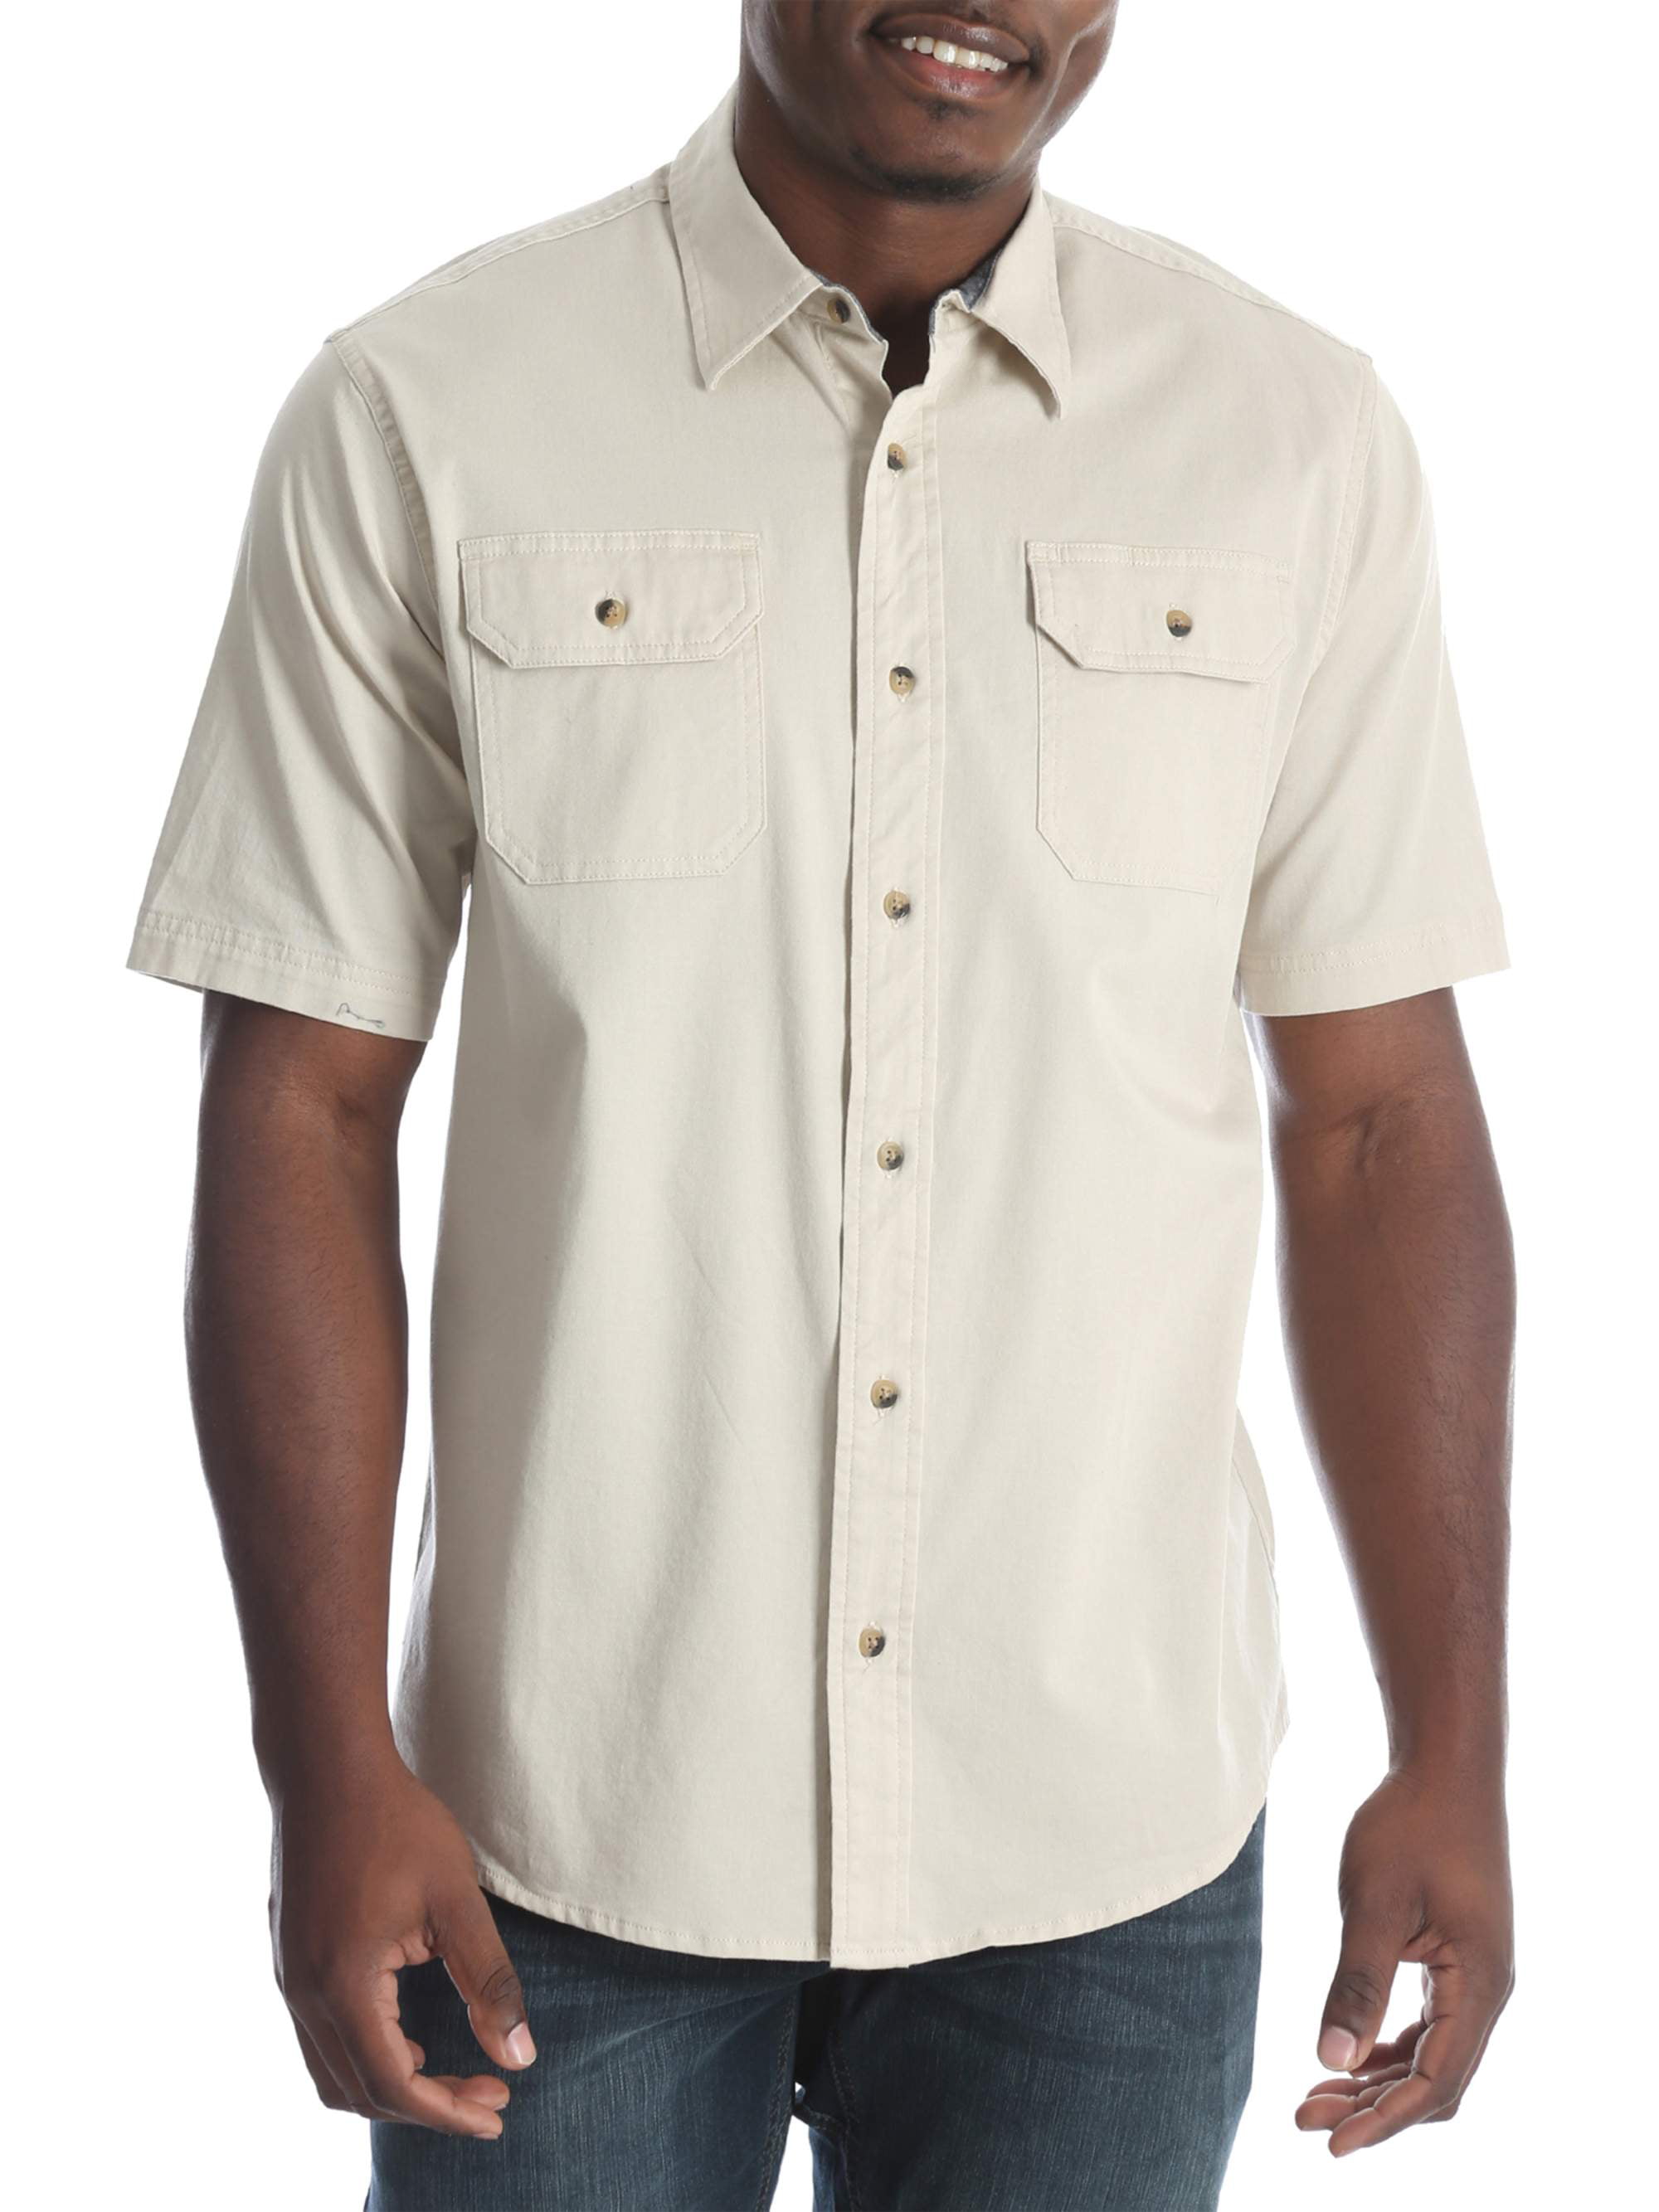 Men's Short Sleeve Woven Shirt - Walmart.com